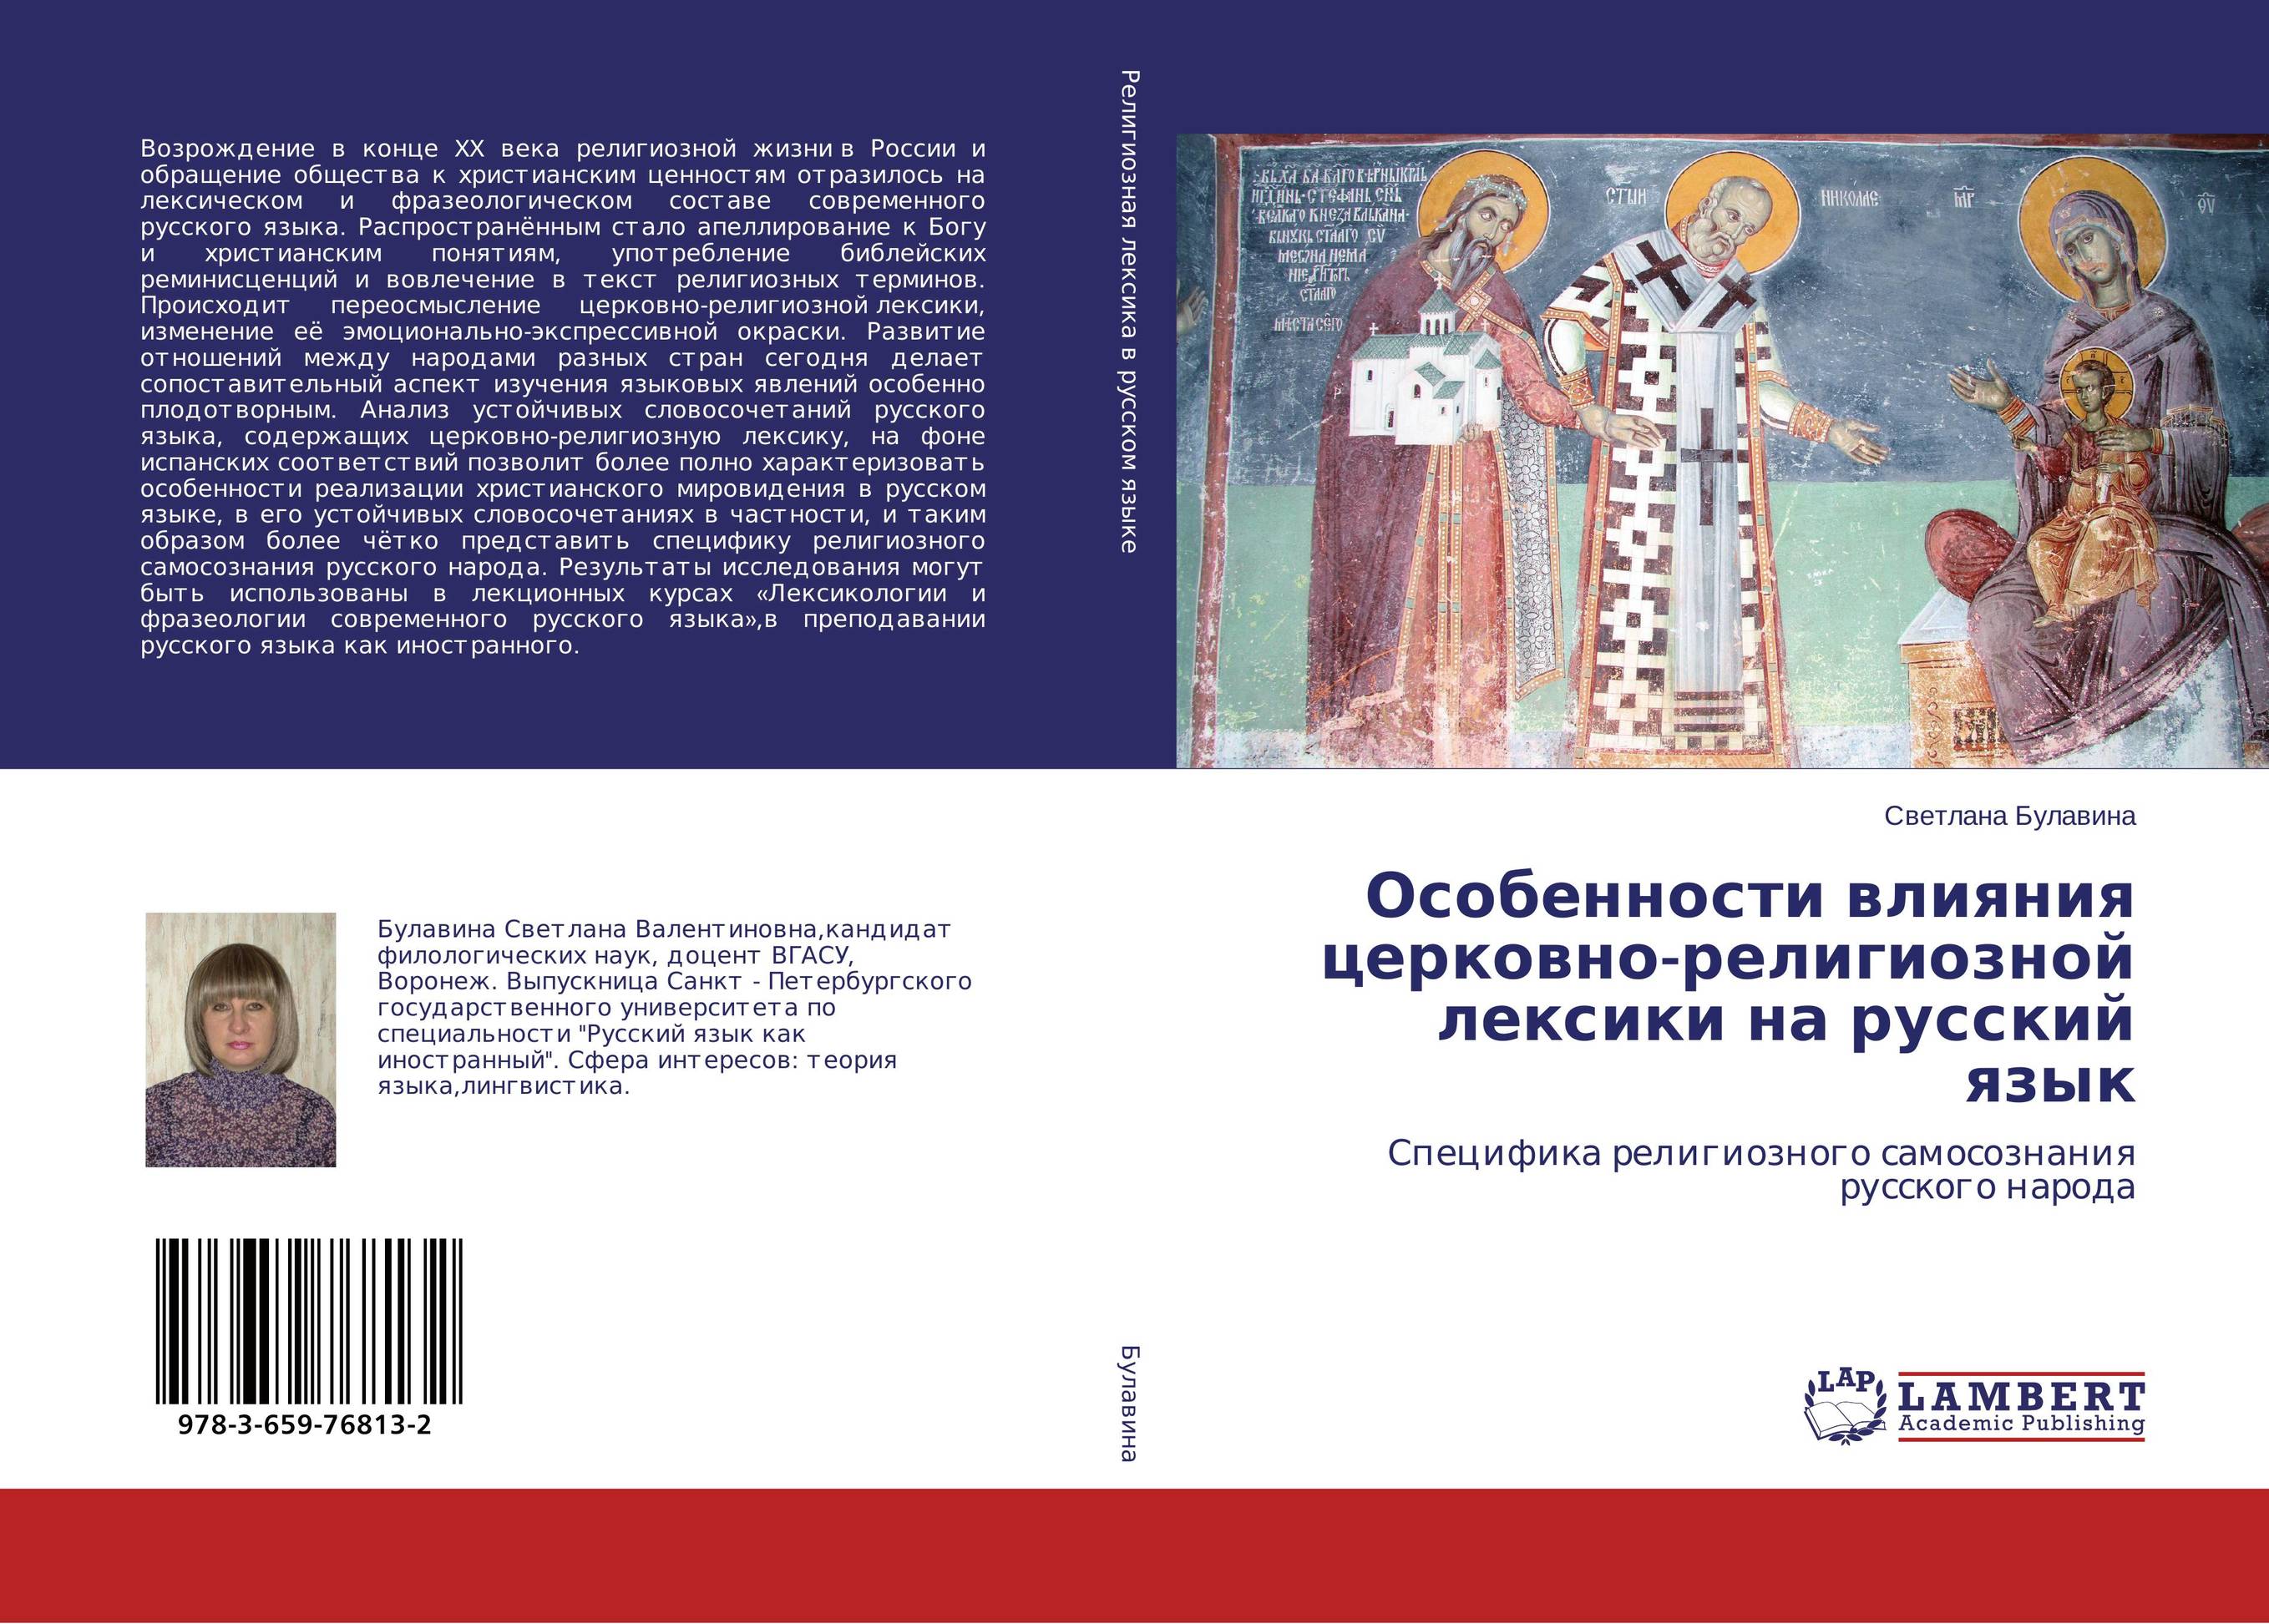 
        Особенности влияния церковно-религиозной лексики на русский язык. Специфика религиозного самосознания русского народа.
      